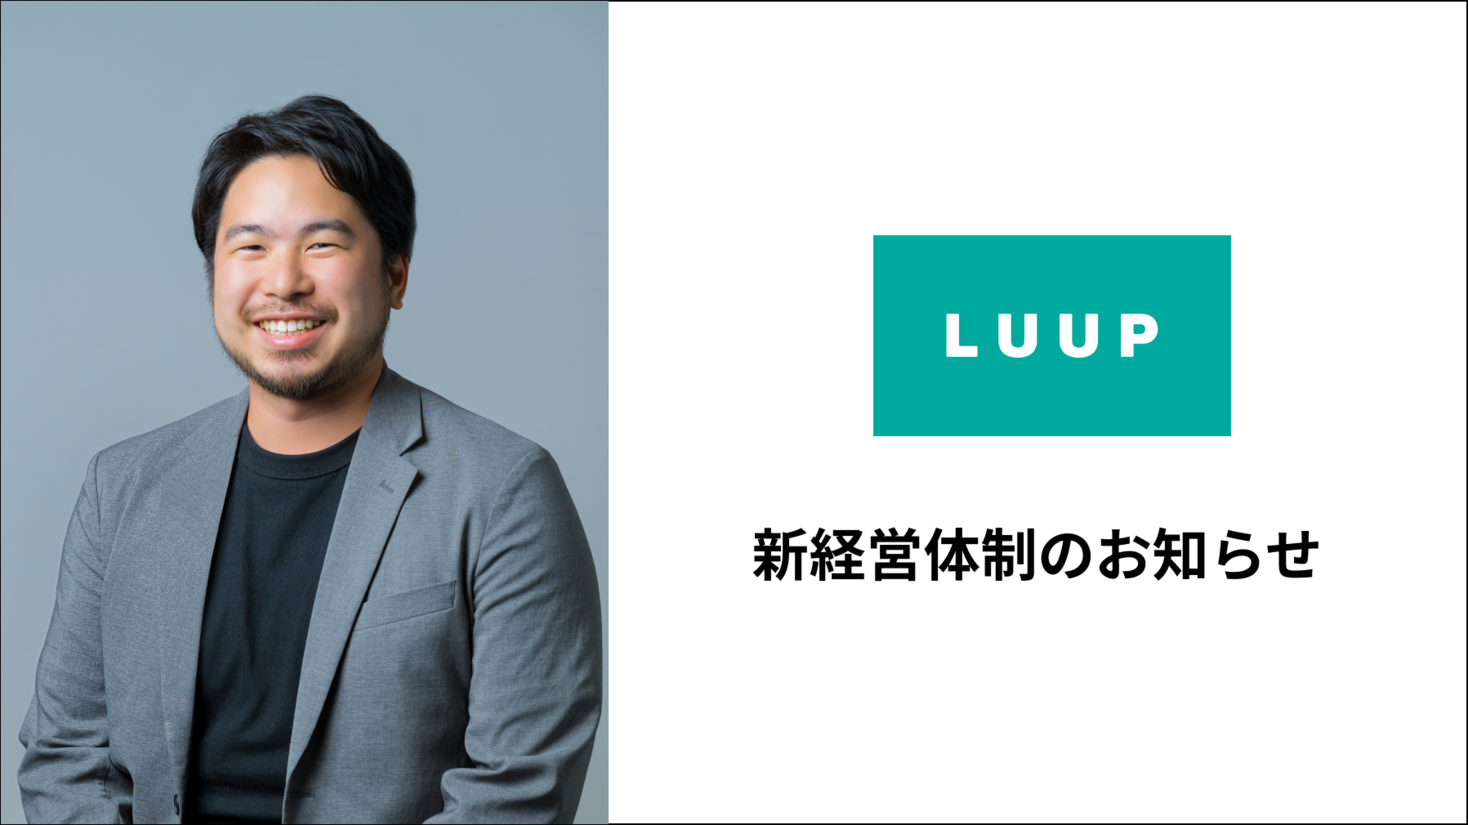 Luup 元uber Japan営業本部長の佐々木裕馬氏が副社長兼cboに就任 株式会社luupのプレスリリース